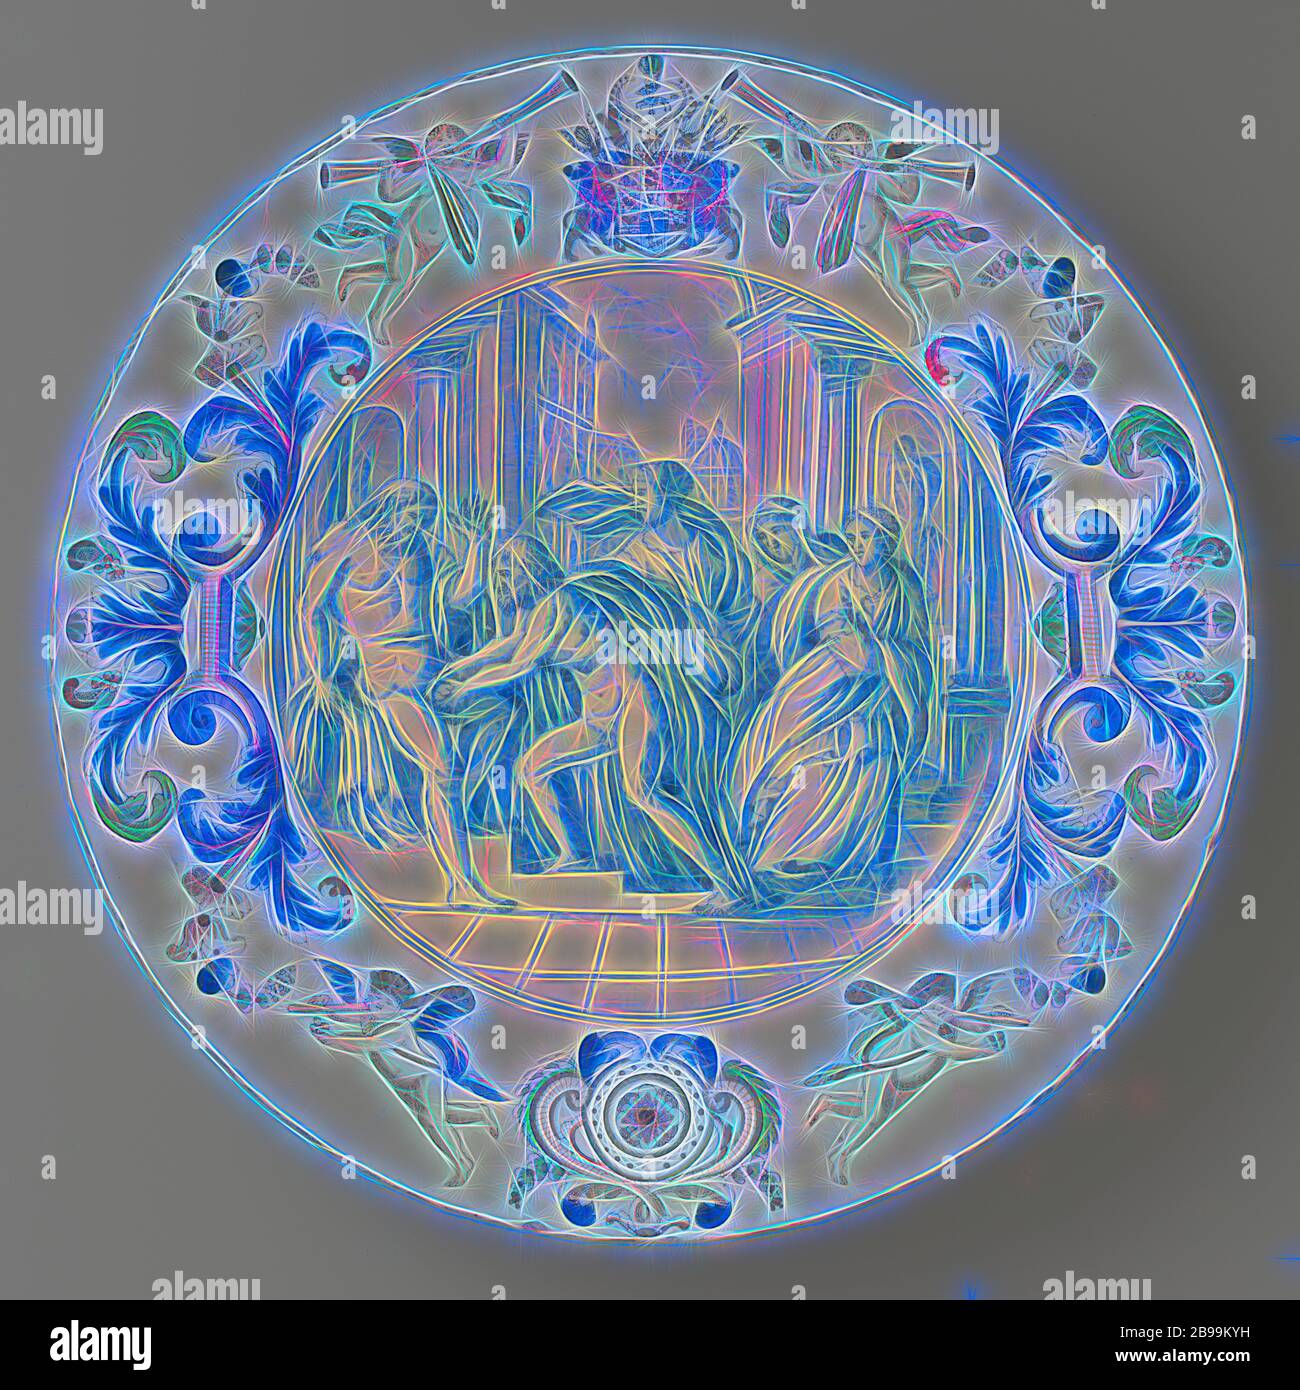 Piatto con la castrazione del piatto di Urano raffigurante la rimozione di Urano di Kronos, piatto di fede, raffigurante la rimozione di Urano di Kronos. Alla periferia lo stemma dei duchi di Braunschweig e Lüneburg. Dipinta multicolore, Het Moriaanshooft, Delft, c. 1680 - c. 1685, h 5.0 cm × d 38.5 cm, Reimagined by Gibon, design di calda e allegra luce incandescente e luminosità raggi. Arte classica reinventata con un tocco moderno. La fotografia ispirata al futurismo, abbracciando l'energia dinamica della tecnologia moderna, del movimento, della velocità e rivoluzionando la cultura. Foto Stock